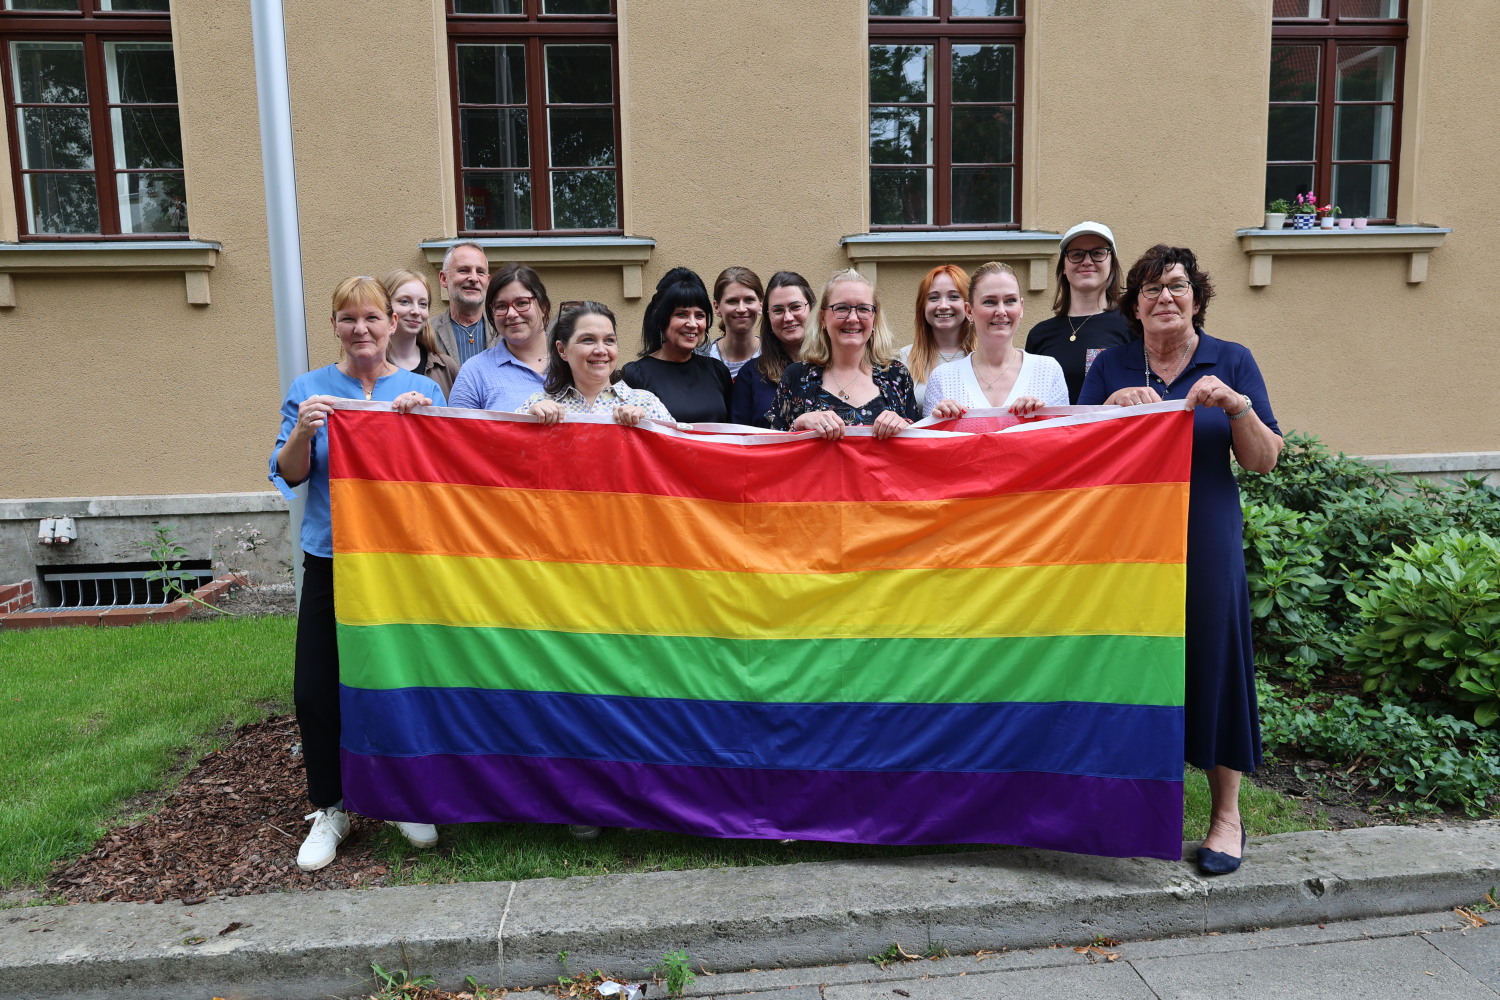 Beschäftigte des Bezirksamtes Steglitz-Zehlendorf gemeinsam mit Bezirksstadträtin Carolina Böhm (vorne links) und Bezirksbürgermeisterin Maren Schellenberg (vorne rechts) mit einer Regenbogenflagge